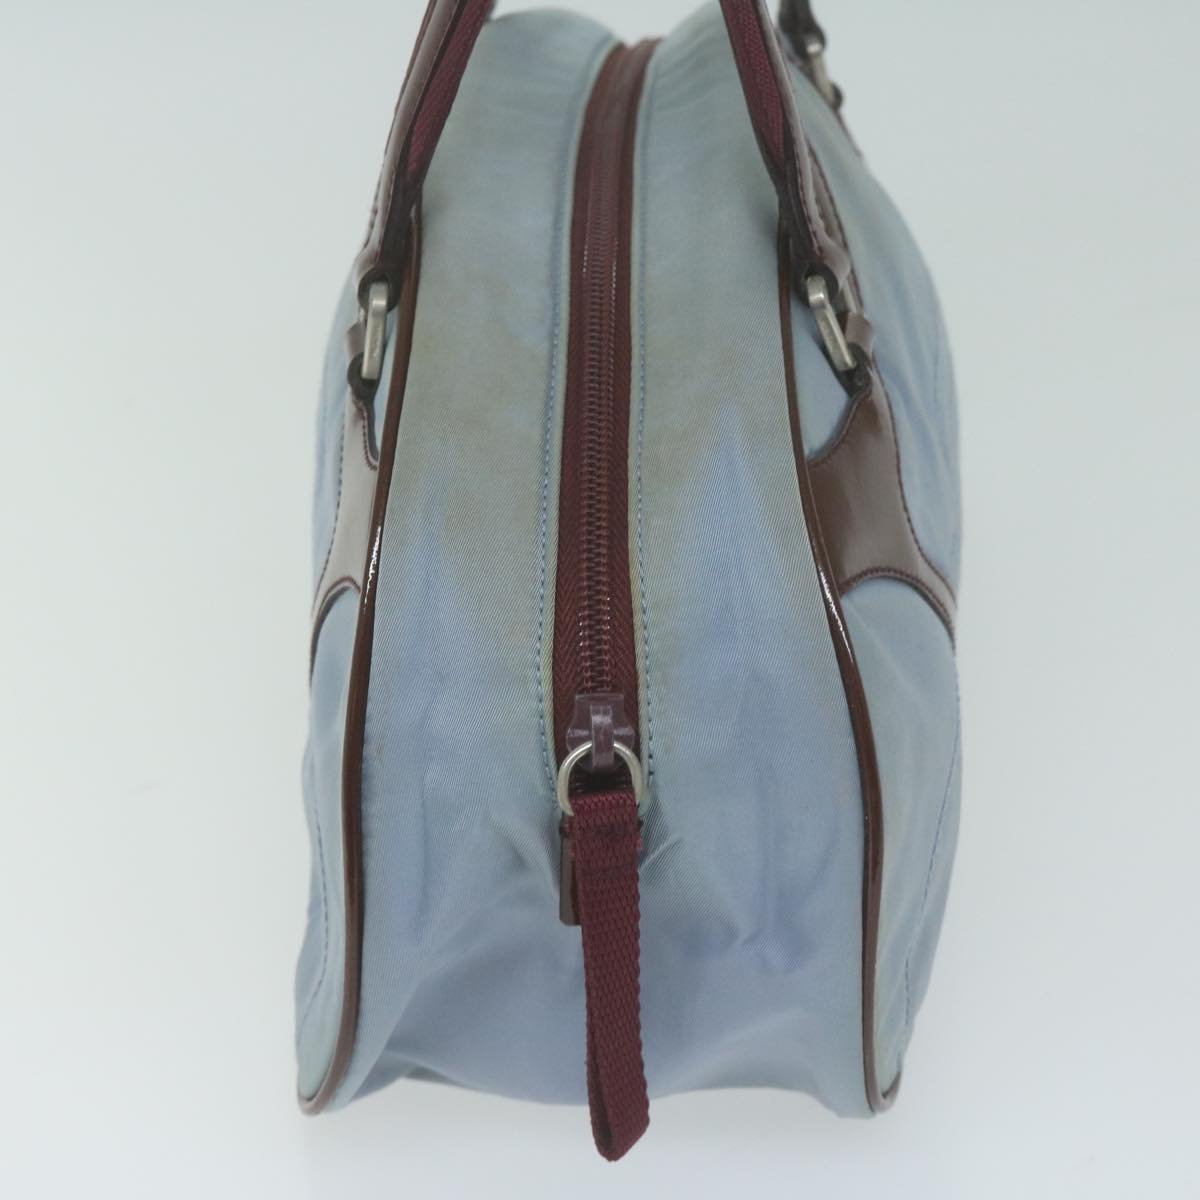 PRADA Hand Bag Nylon Light Blue Auth bs11864